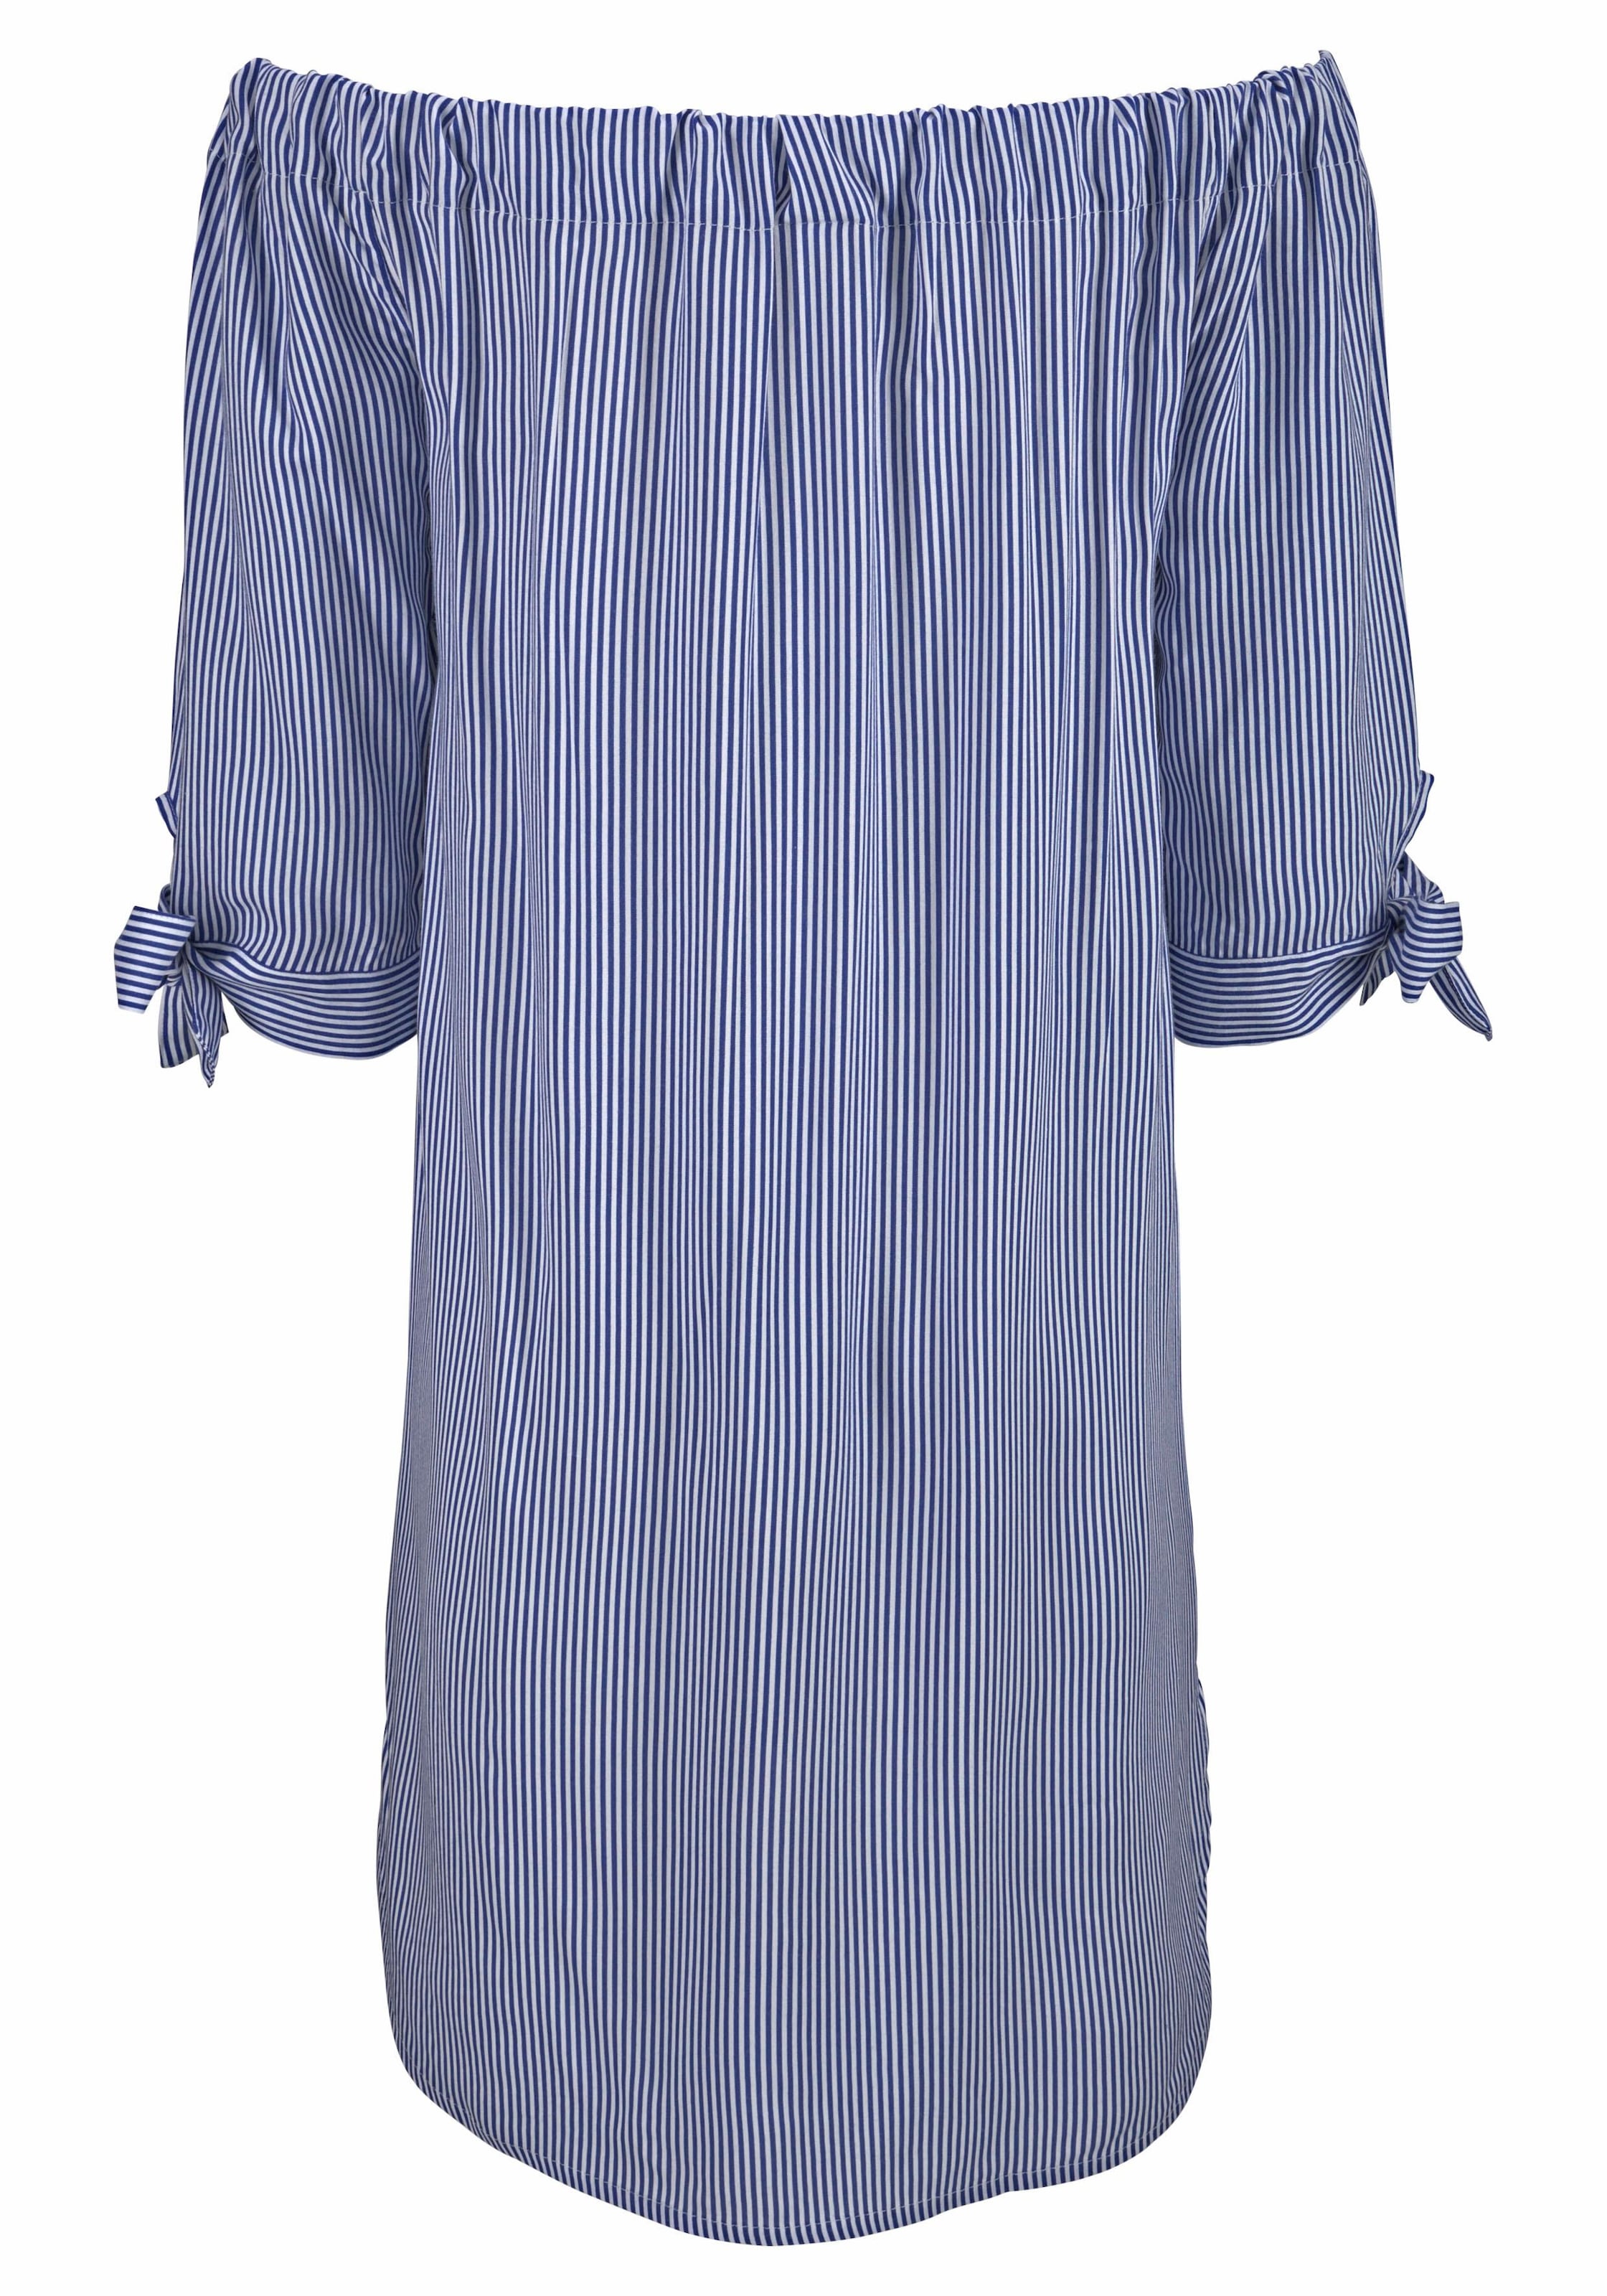 LASCANA Blusenkleid, mit Streifendruck und Carmenausschnitt, Sommerkleid, Strandkleid